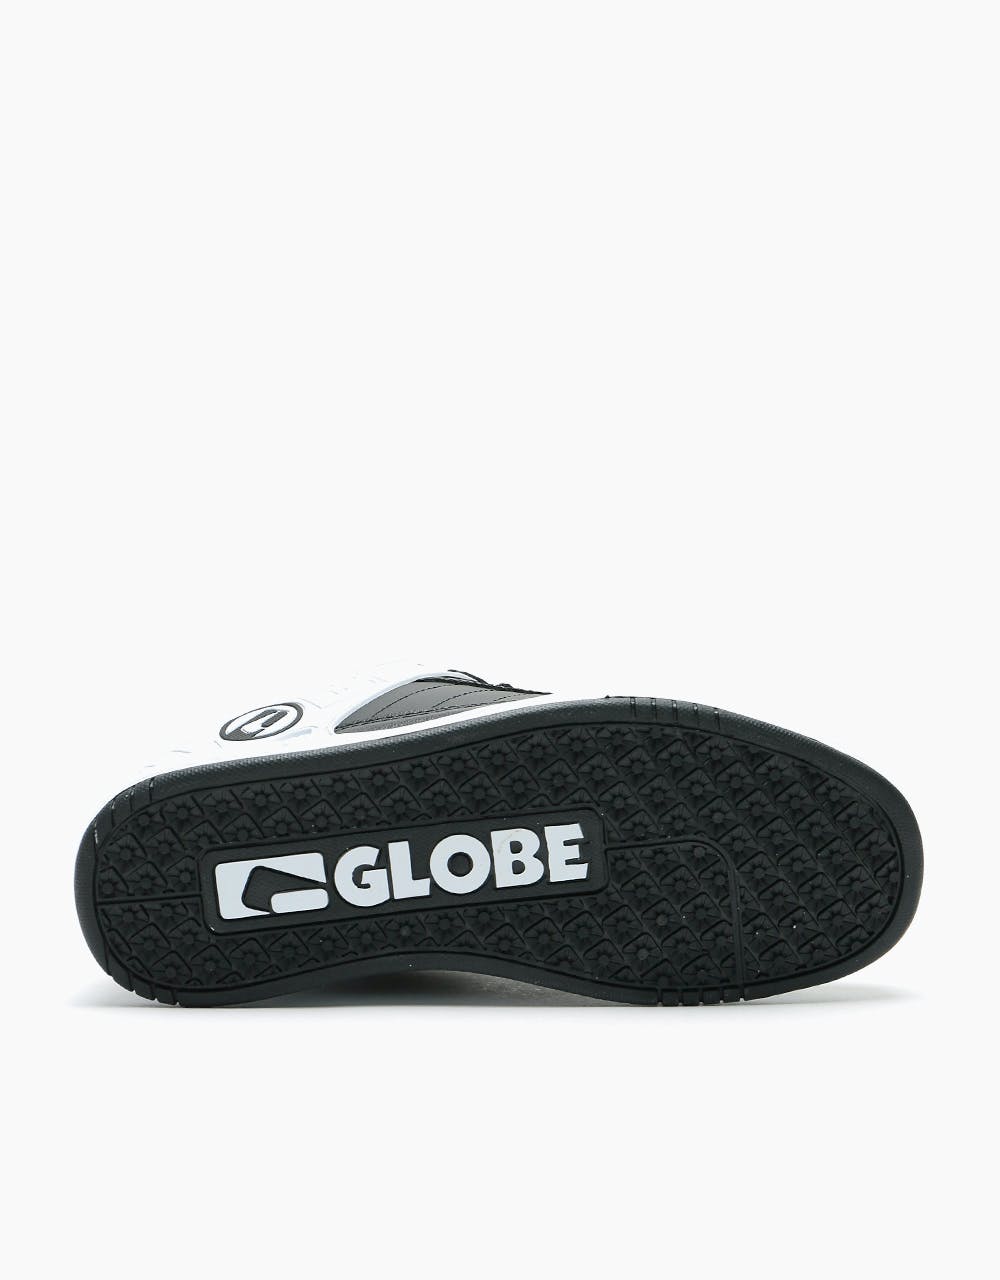 Globe Tilt Skate Shoes - Black/White Split